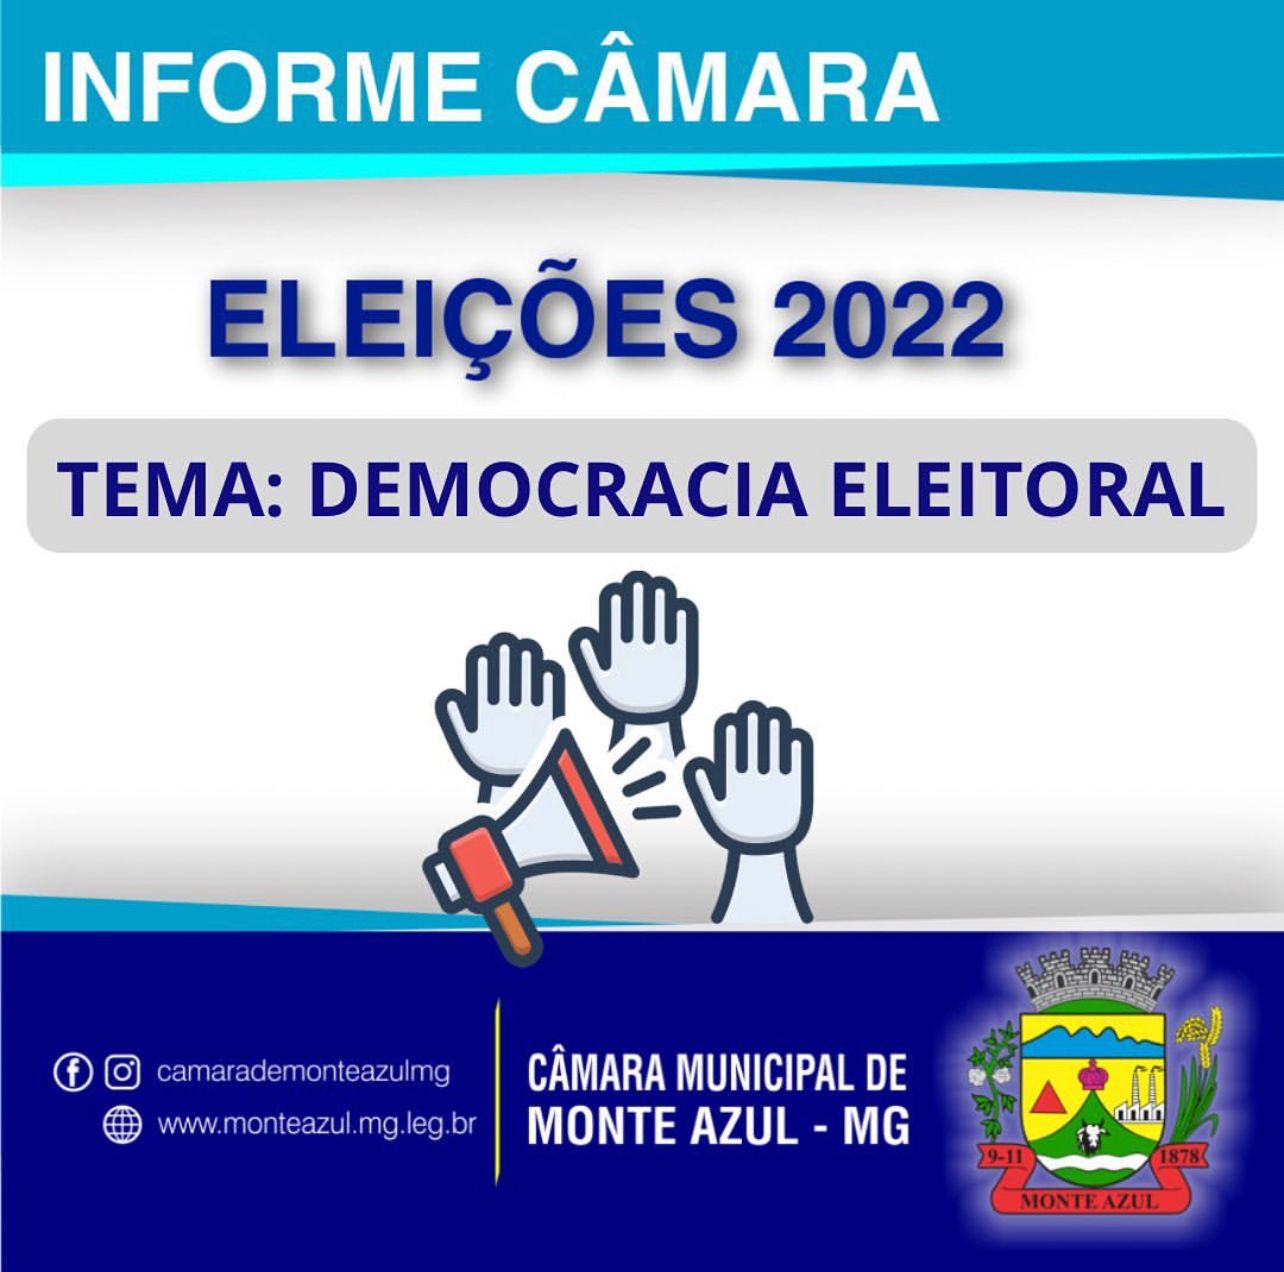 INFORME CÂMARA - ELEIÇÕES 2022